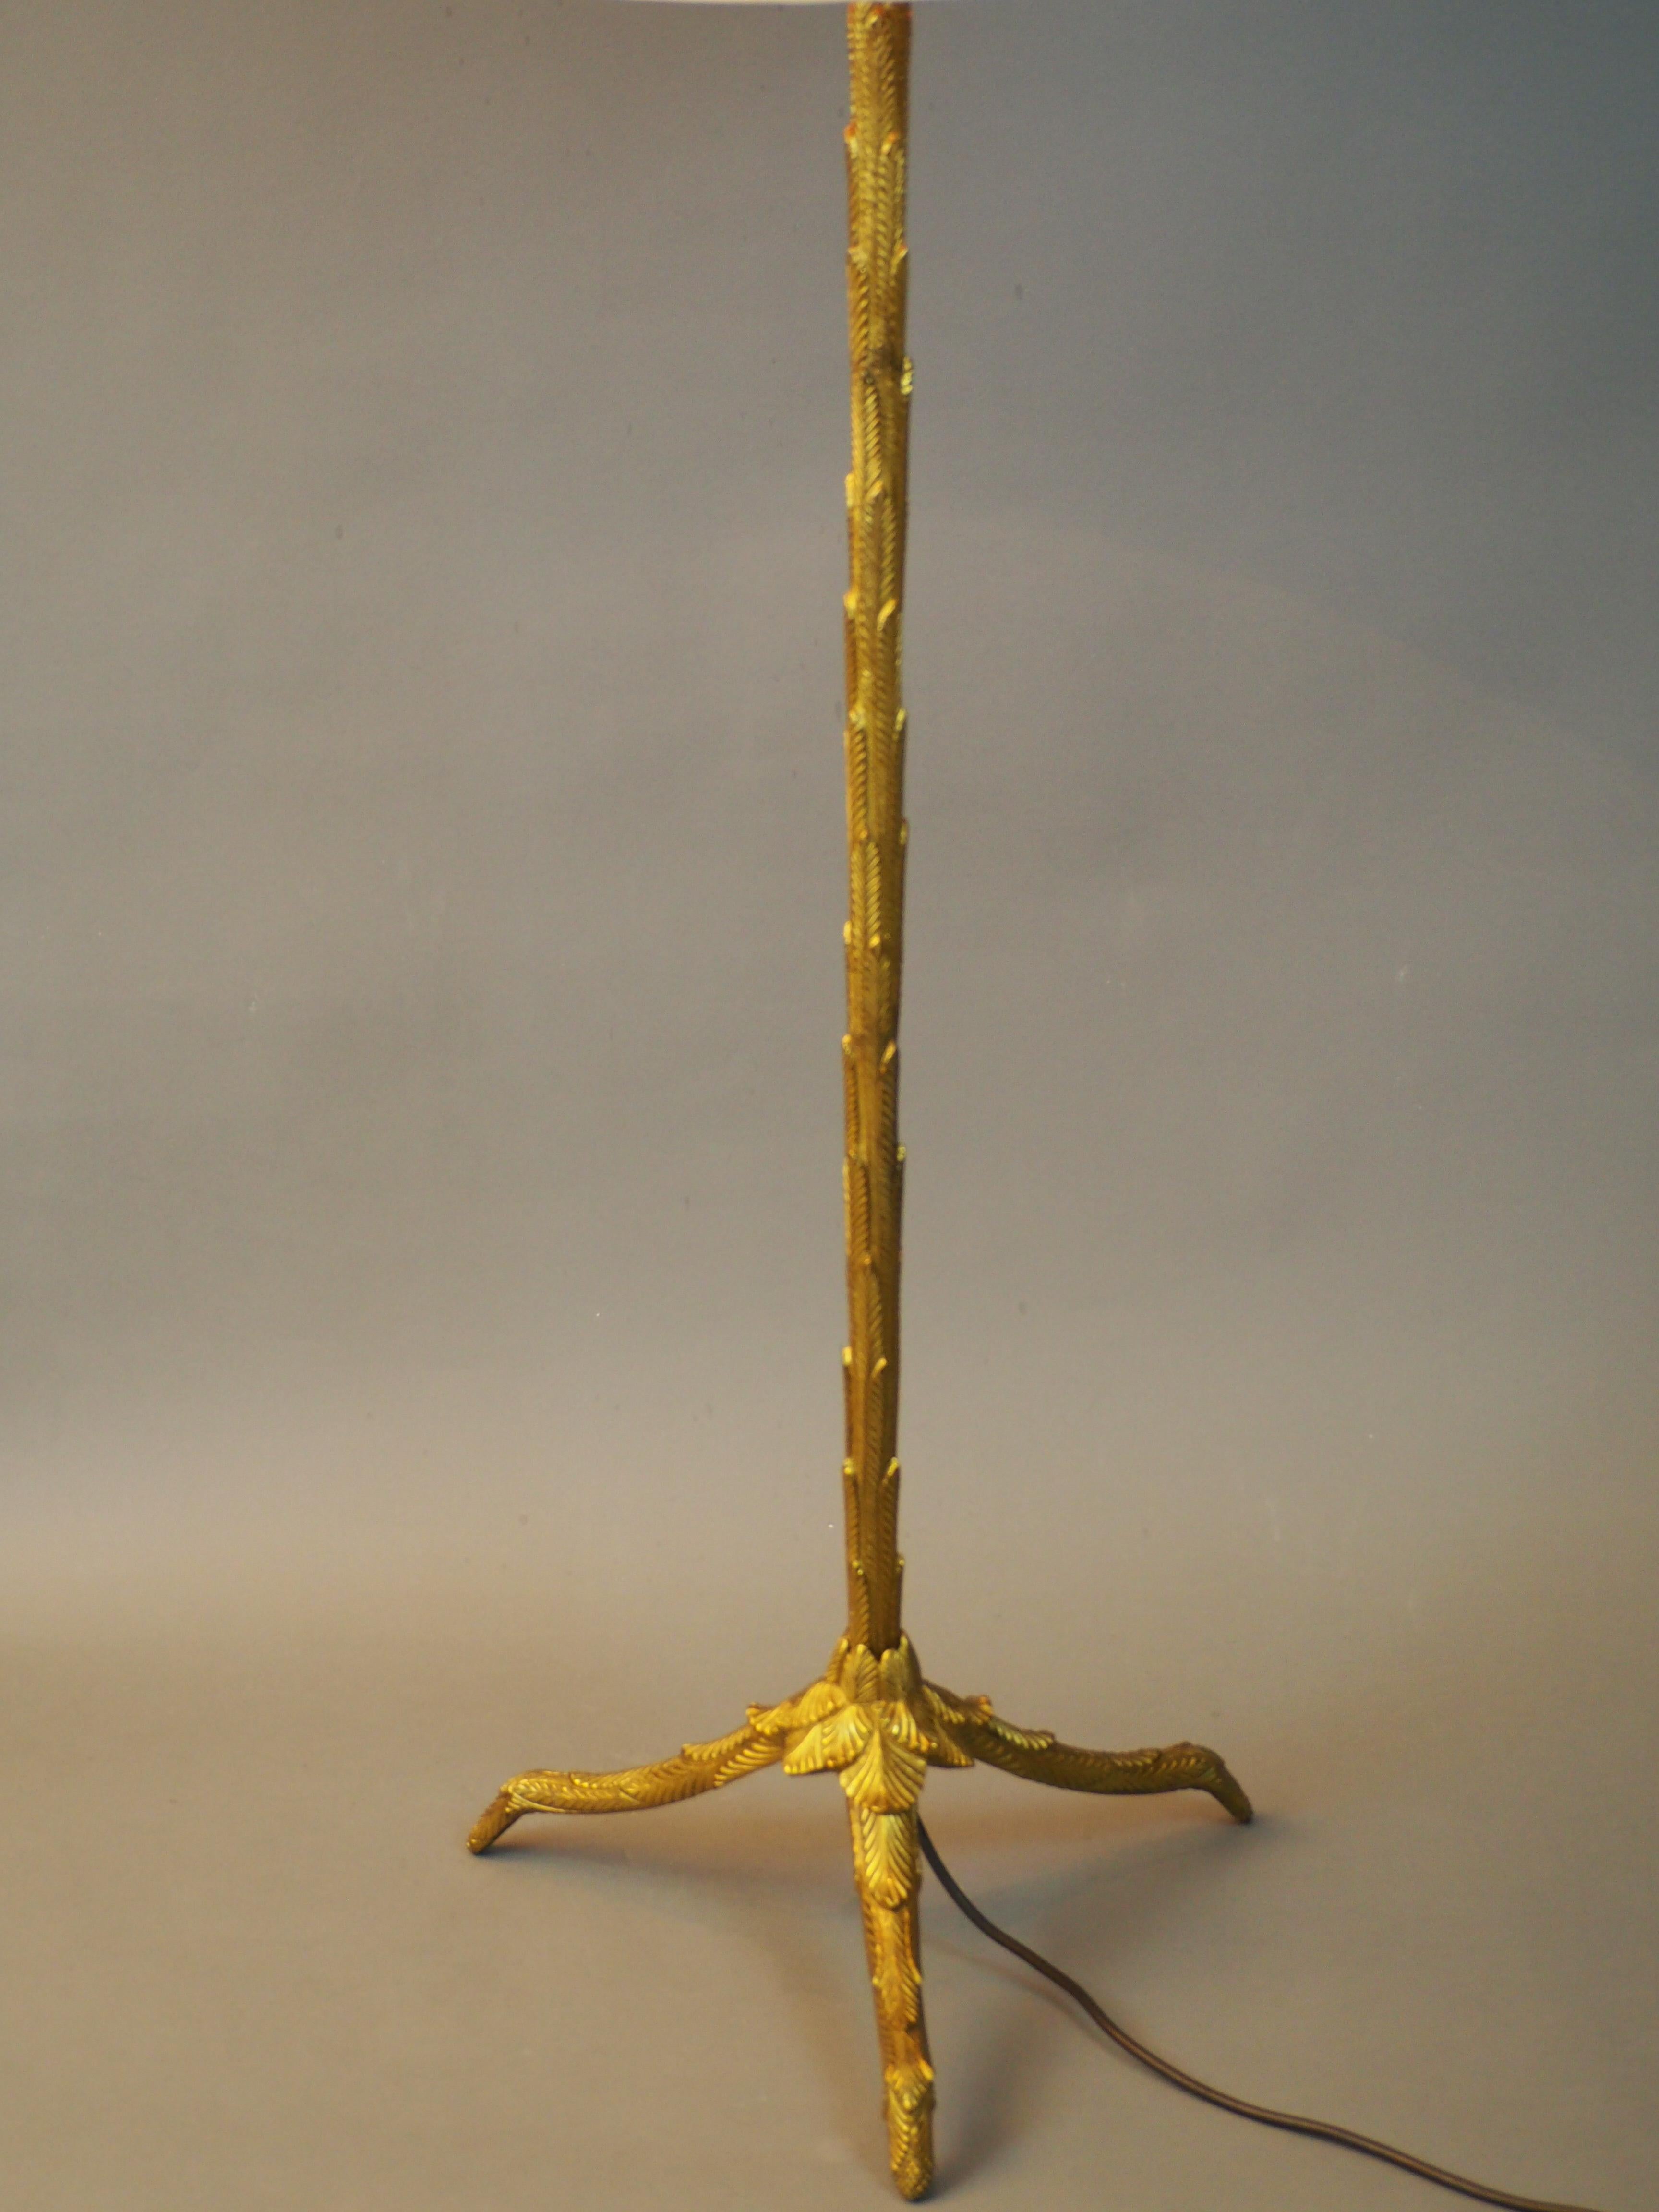 Un beau lampadaire en bronze massif doré de haute qualité avec abat-jour original de la Maison Baguès, France, vers les années 1950.
Les dimensions de l'abat-jour : 19,6